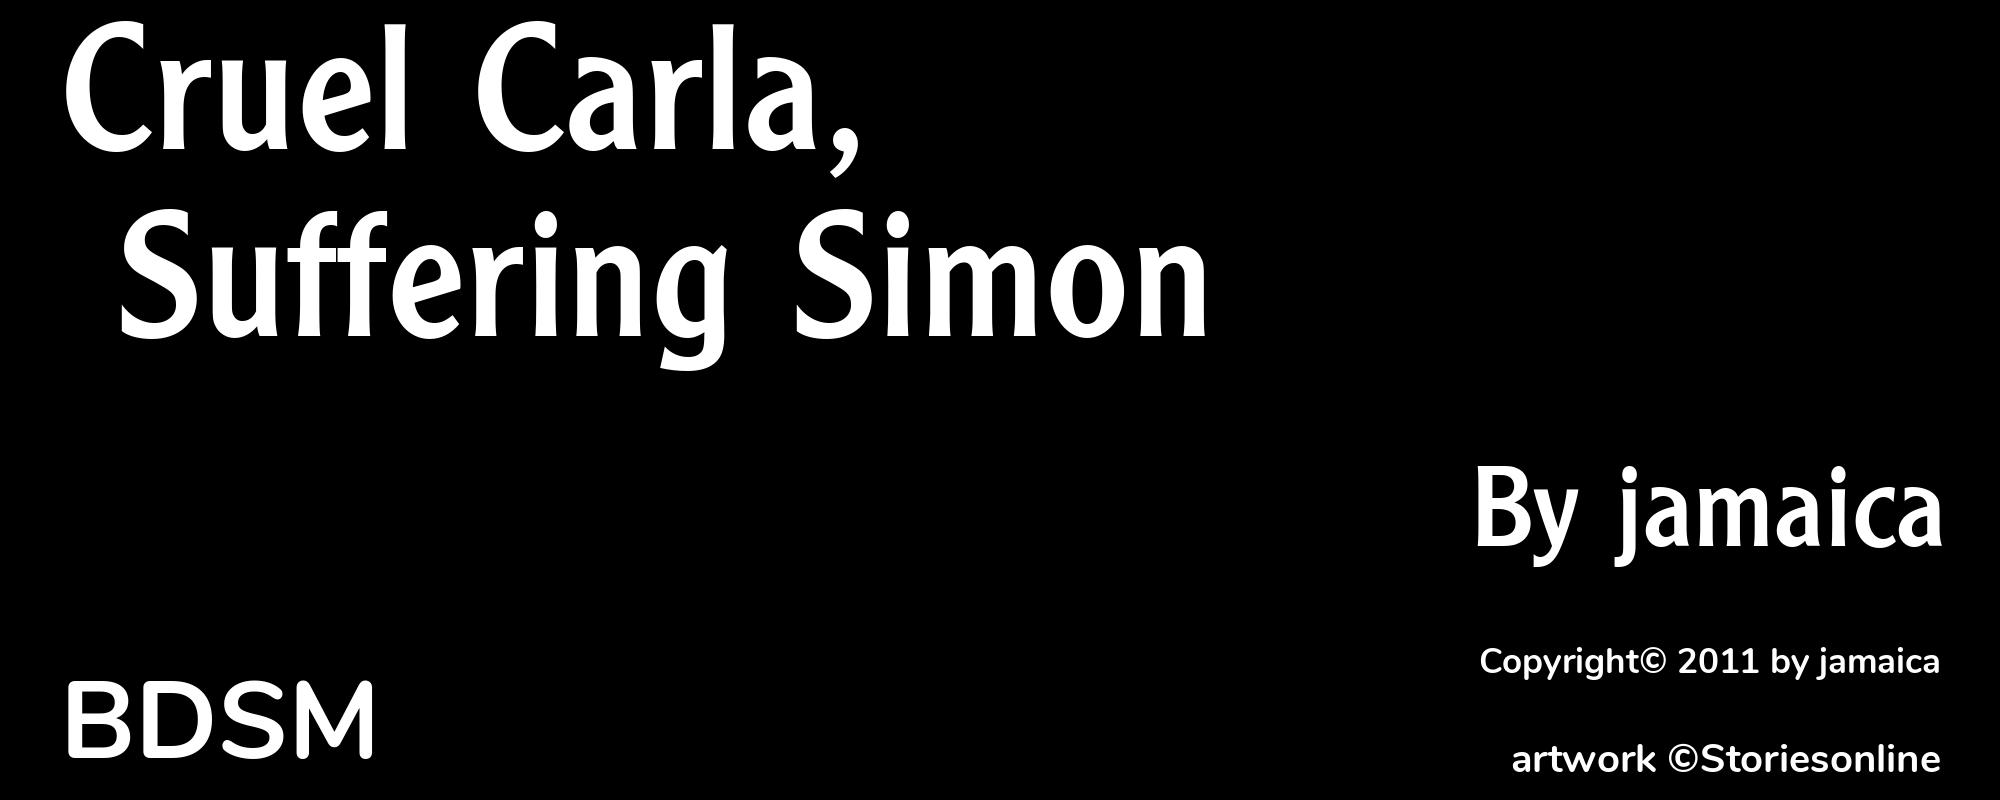 Cruel Carla, Suffering Simon - Cover